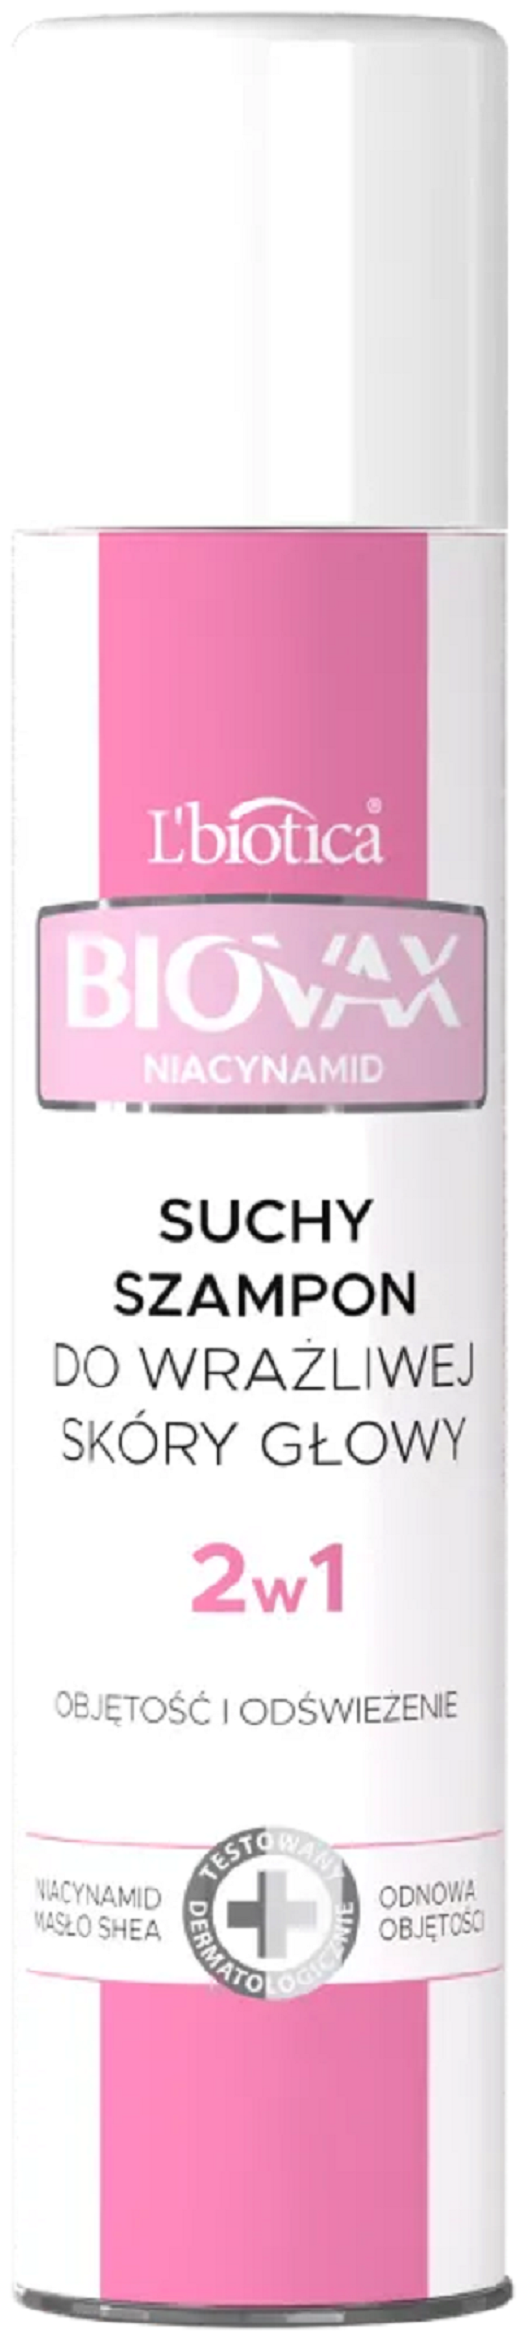 biovax suchy szampon wisnia wizaz